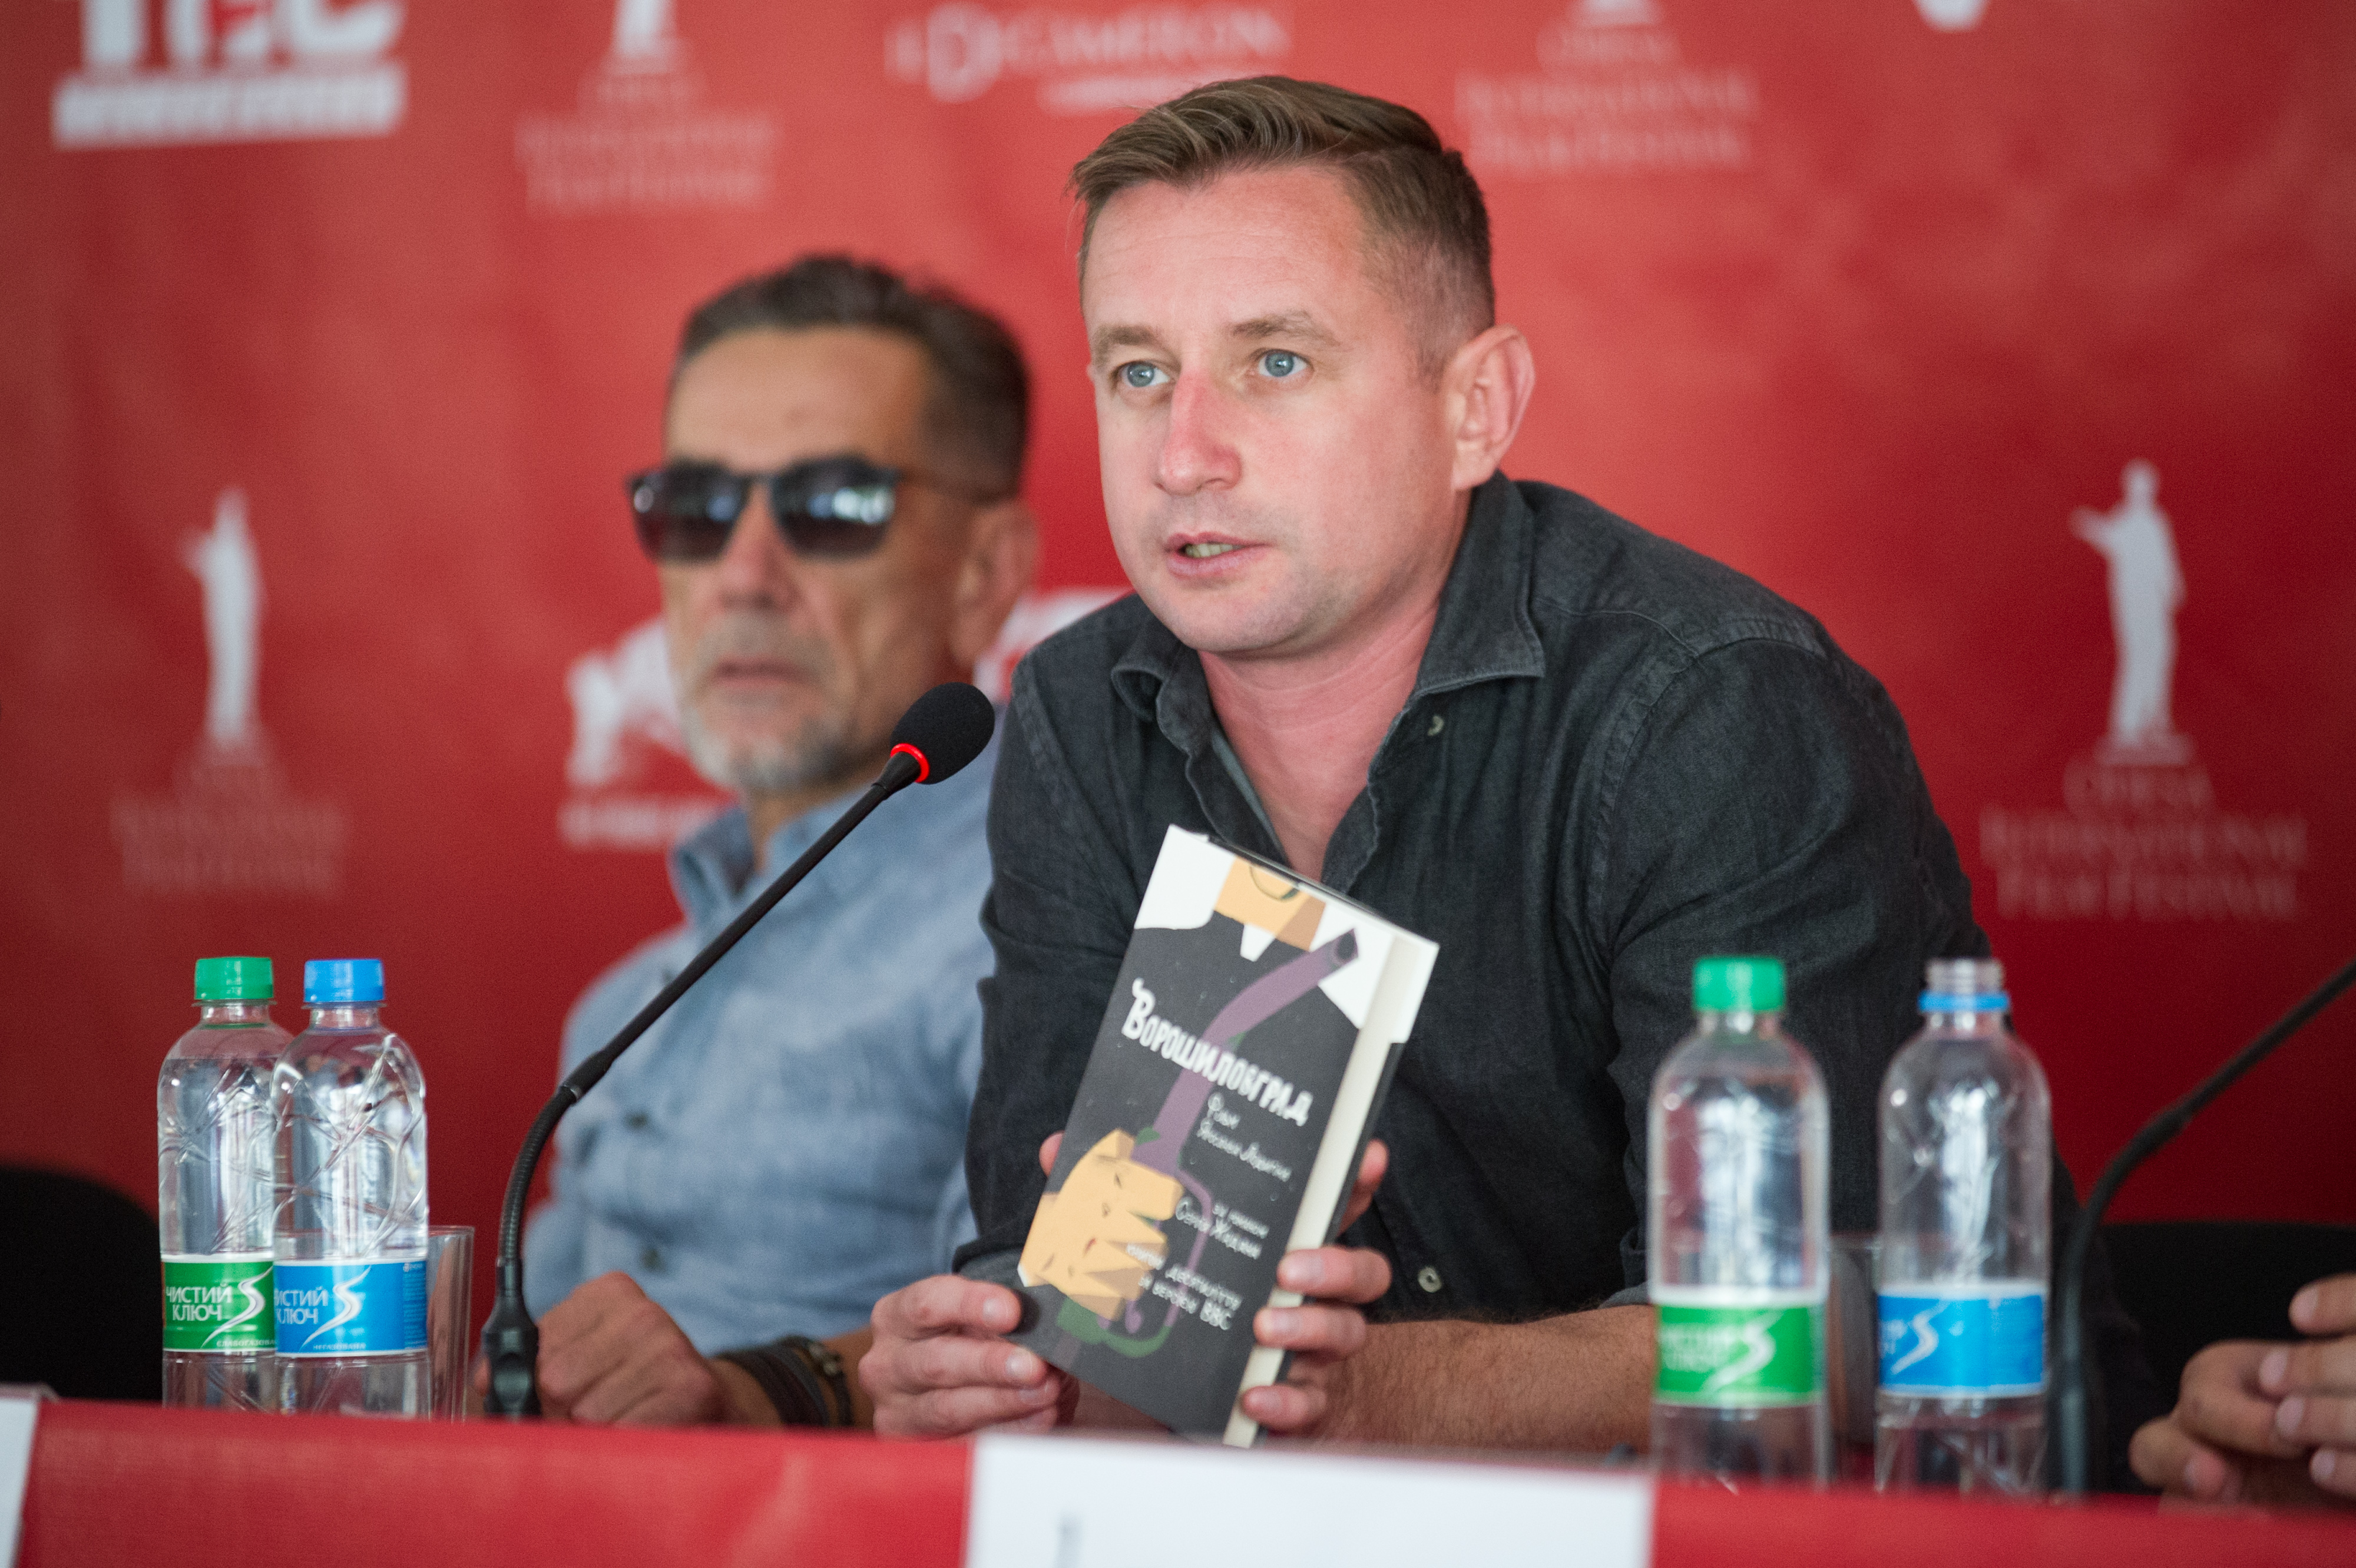 Фільм за романом Жадана «Ворошиловград» називатиметься «Дике поле» і вийде в прокат 11 жовтня 2018 року (ДОПОВНЕНО)